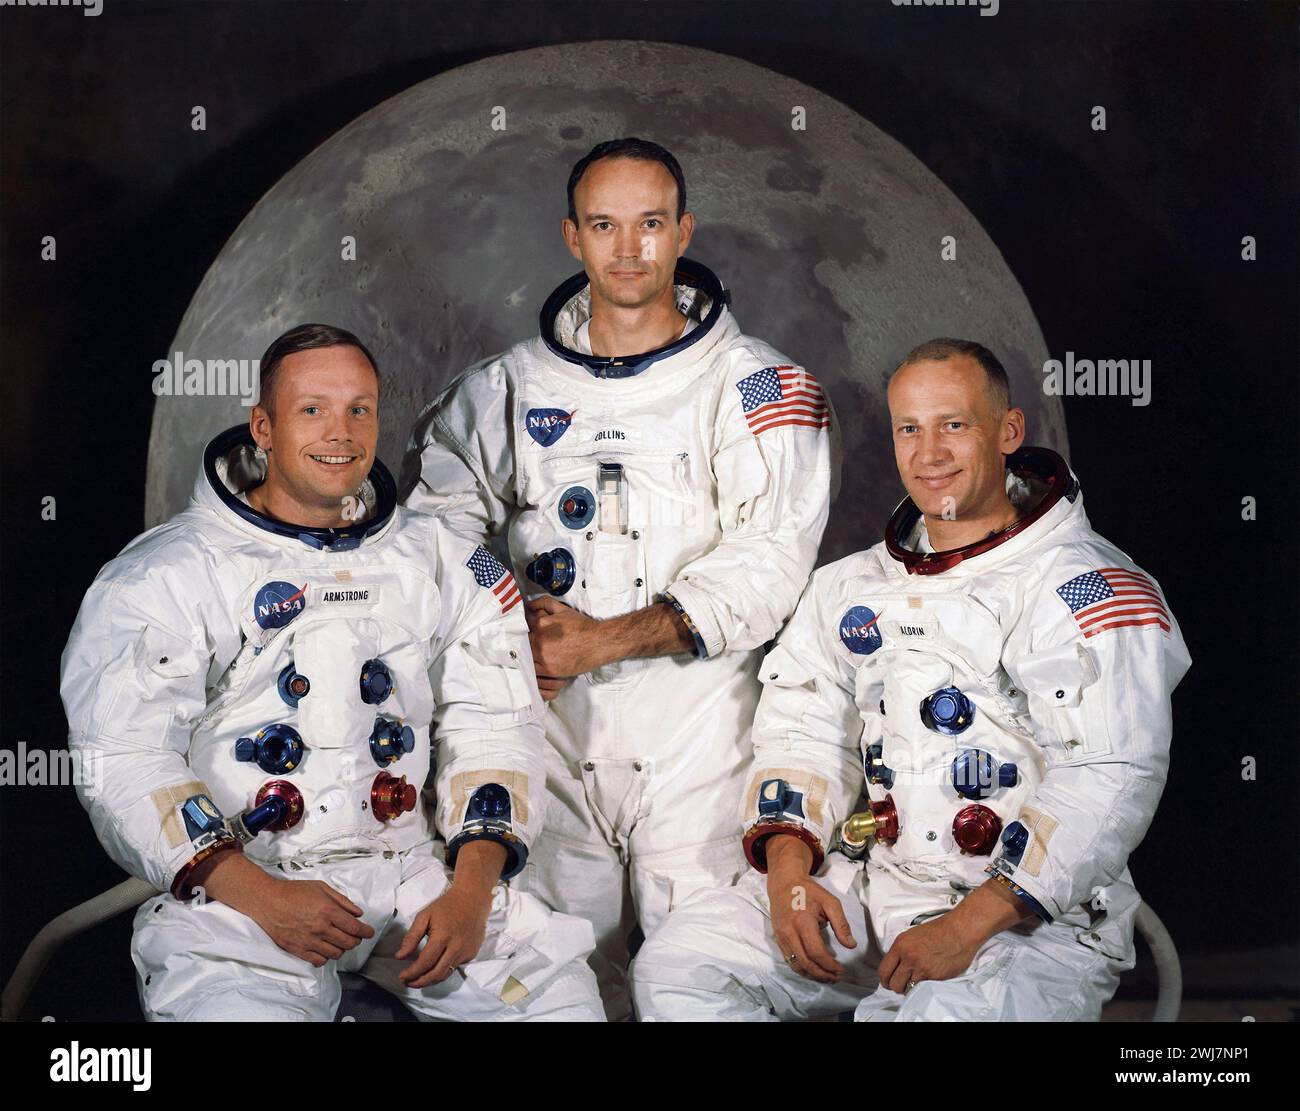 Astronauti dell'Apollo 11. L'equipaggio dell'Apollo 11, il primo volo spaziale a far atterrare uomini sulla luna il 20 luglio 1969. Da sinistra a destra, Neil Armstrong, Michael Collins e Buzz Aldrin. Foto gentilmente concessa dalla NASA, maggio 1969. Foto Stock